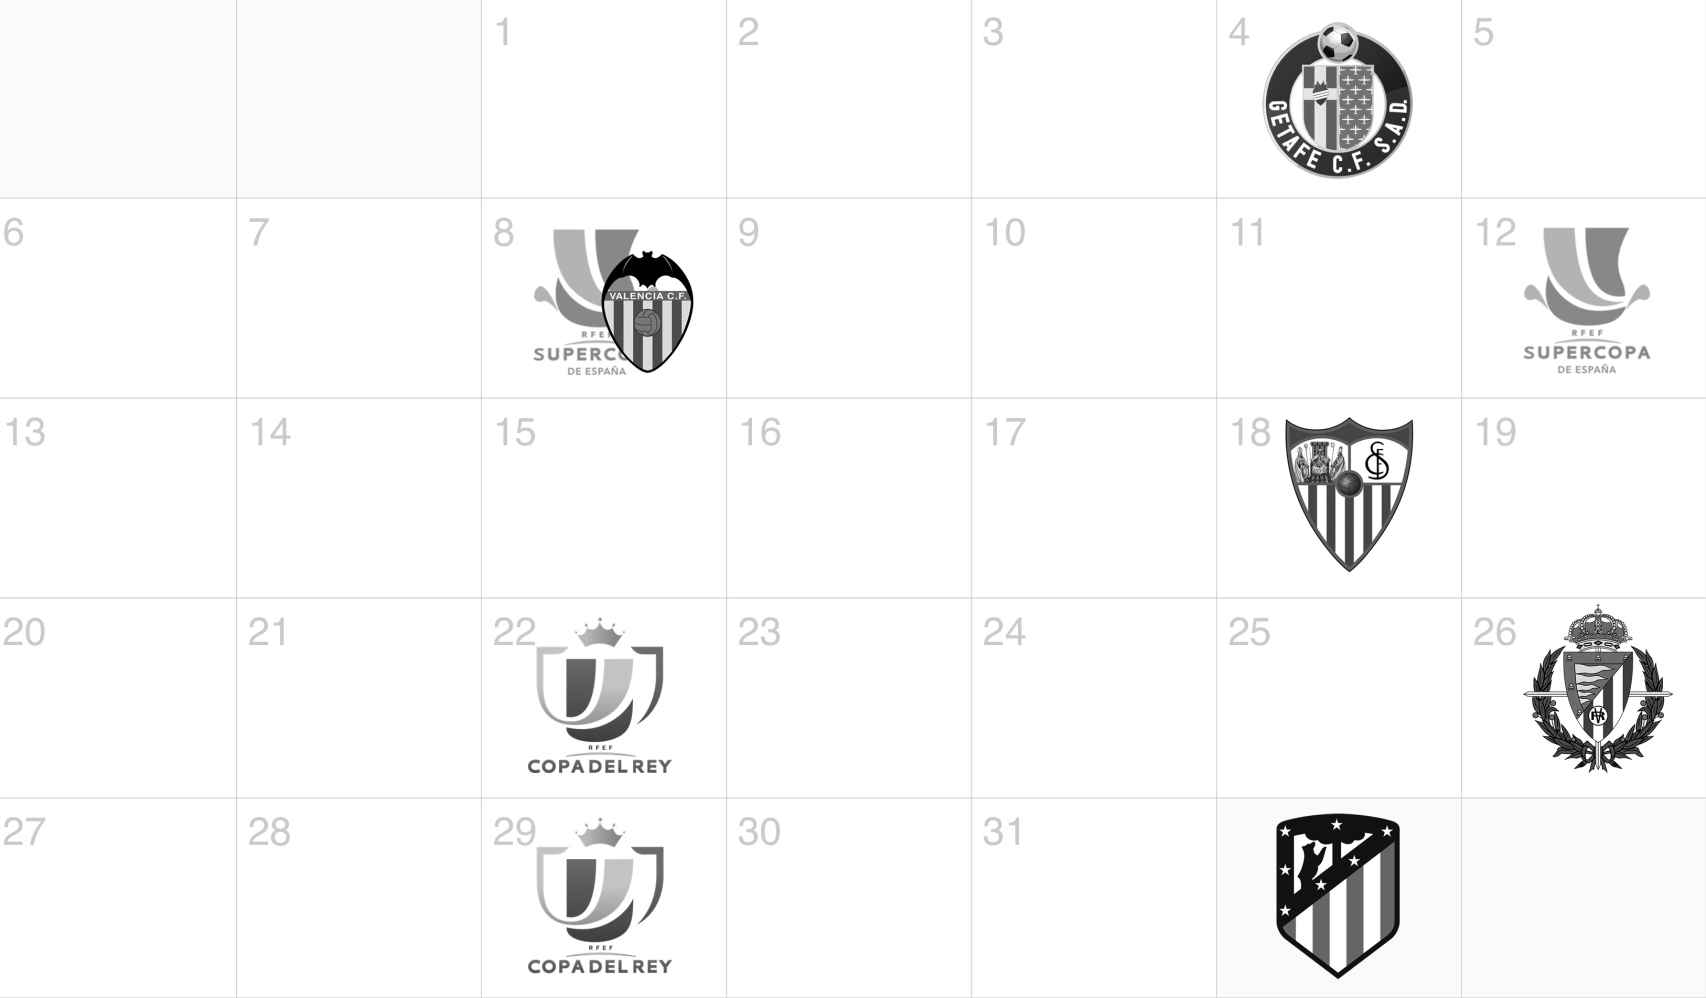 Calendario del Real Madrid - Enero 2020